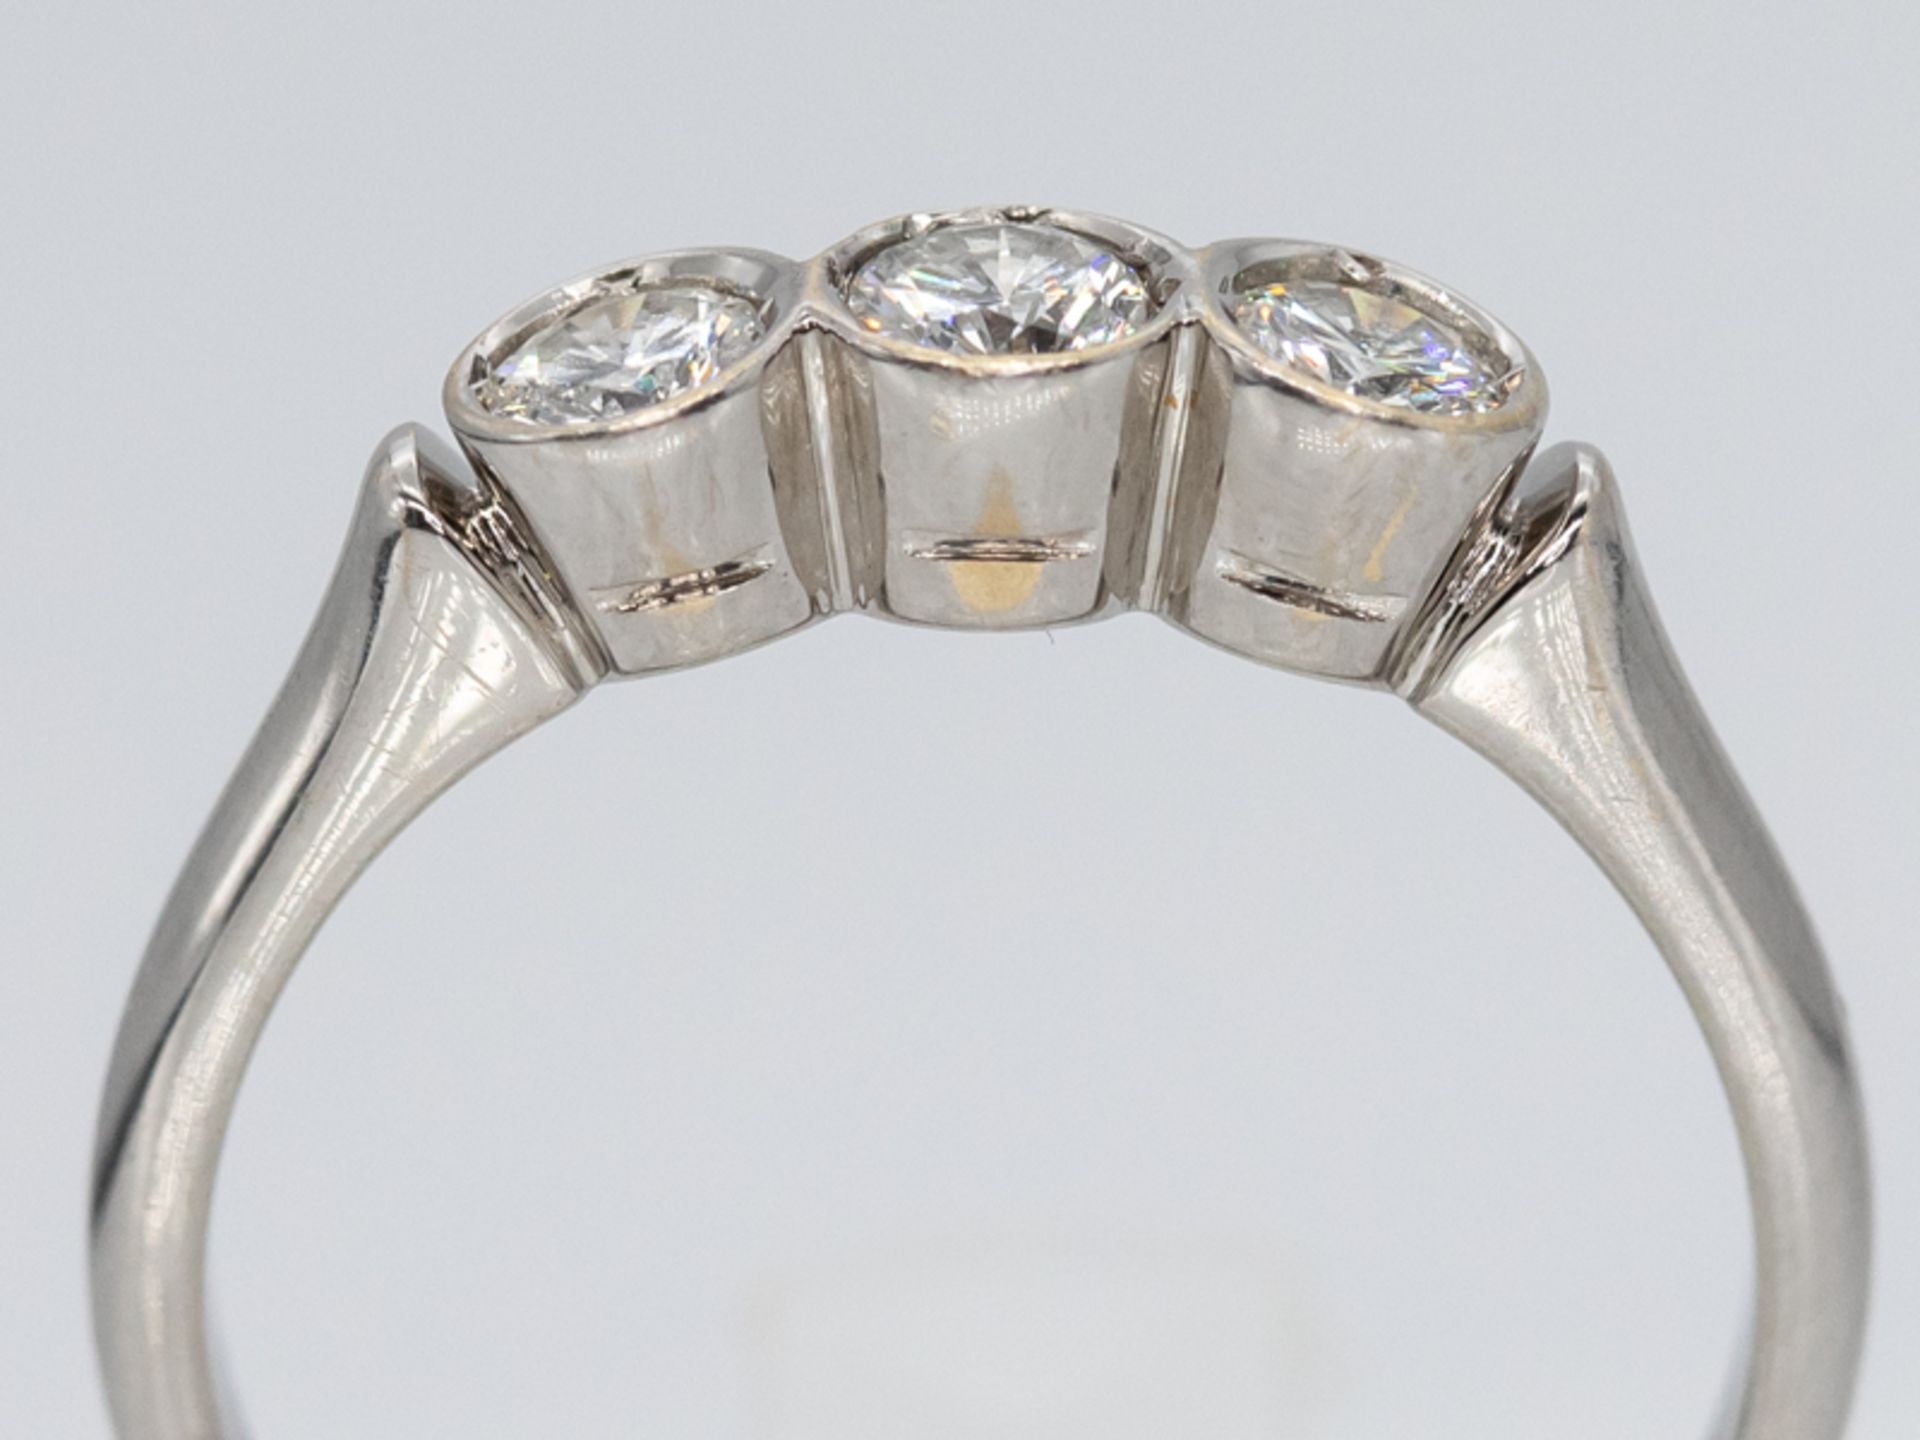 Ring mit 3 Brillanten, zusammen ca. 0,60 ct, Juwelier Wilm, Hamburg, 90- er Jahre. - Image 2 of 4